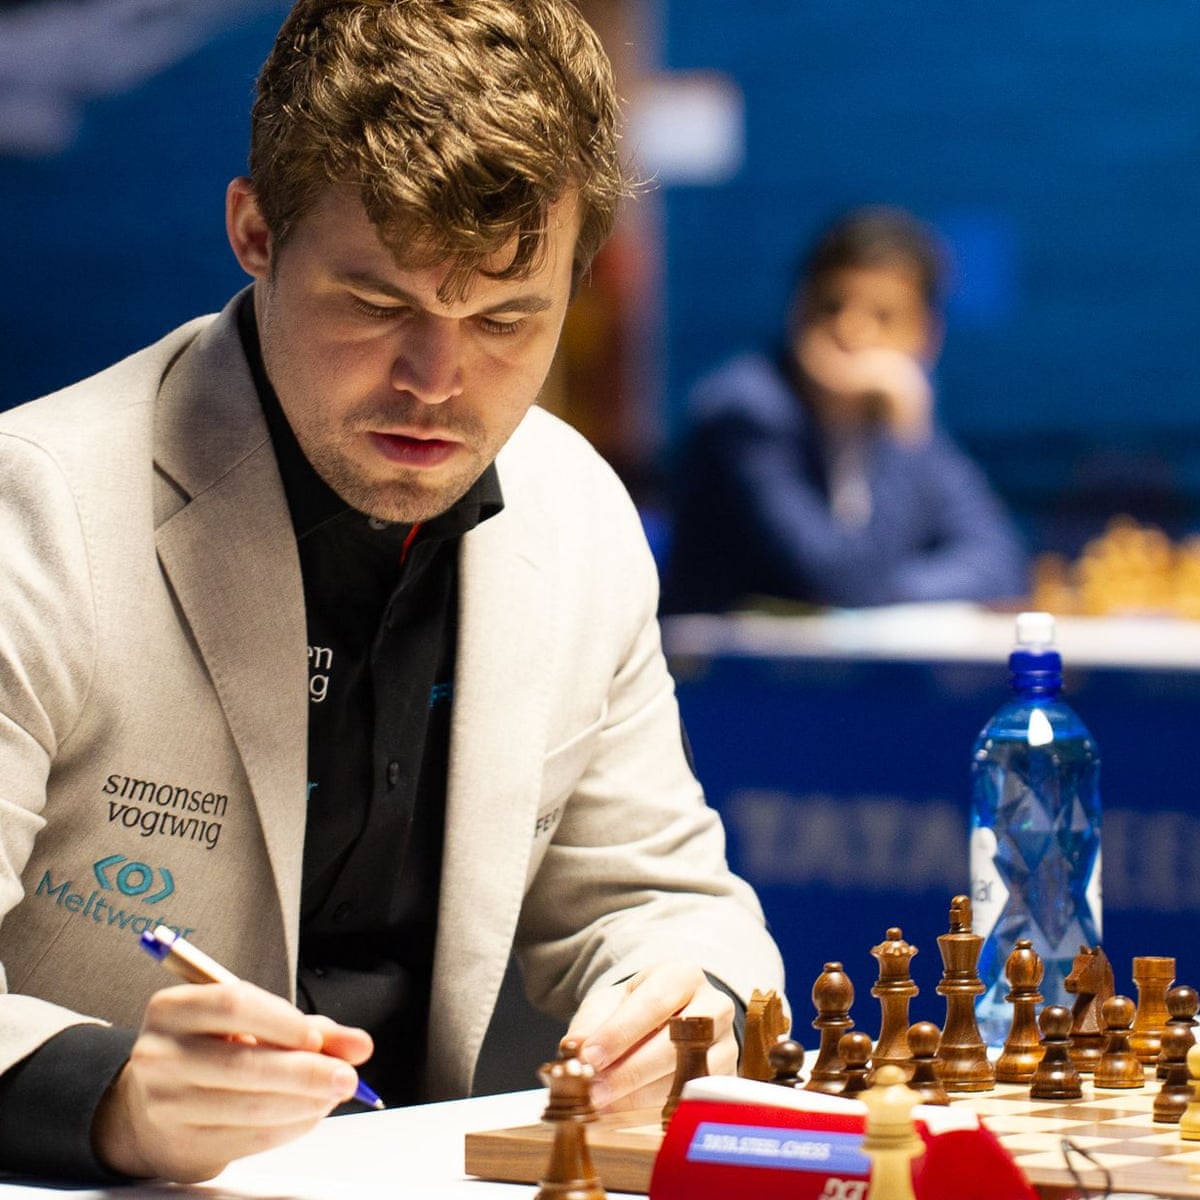 Chess - Carlsen beats Gukesh!